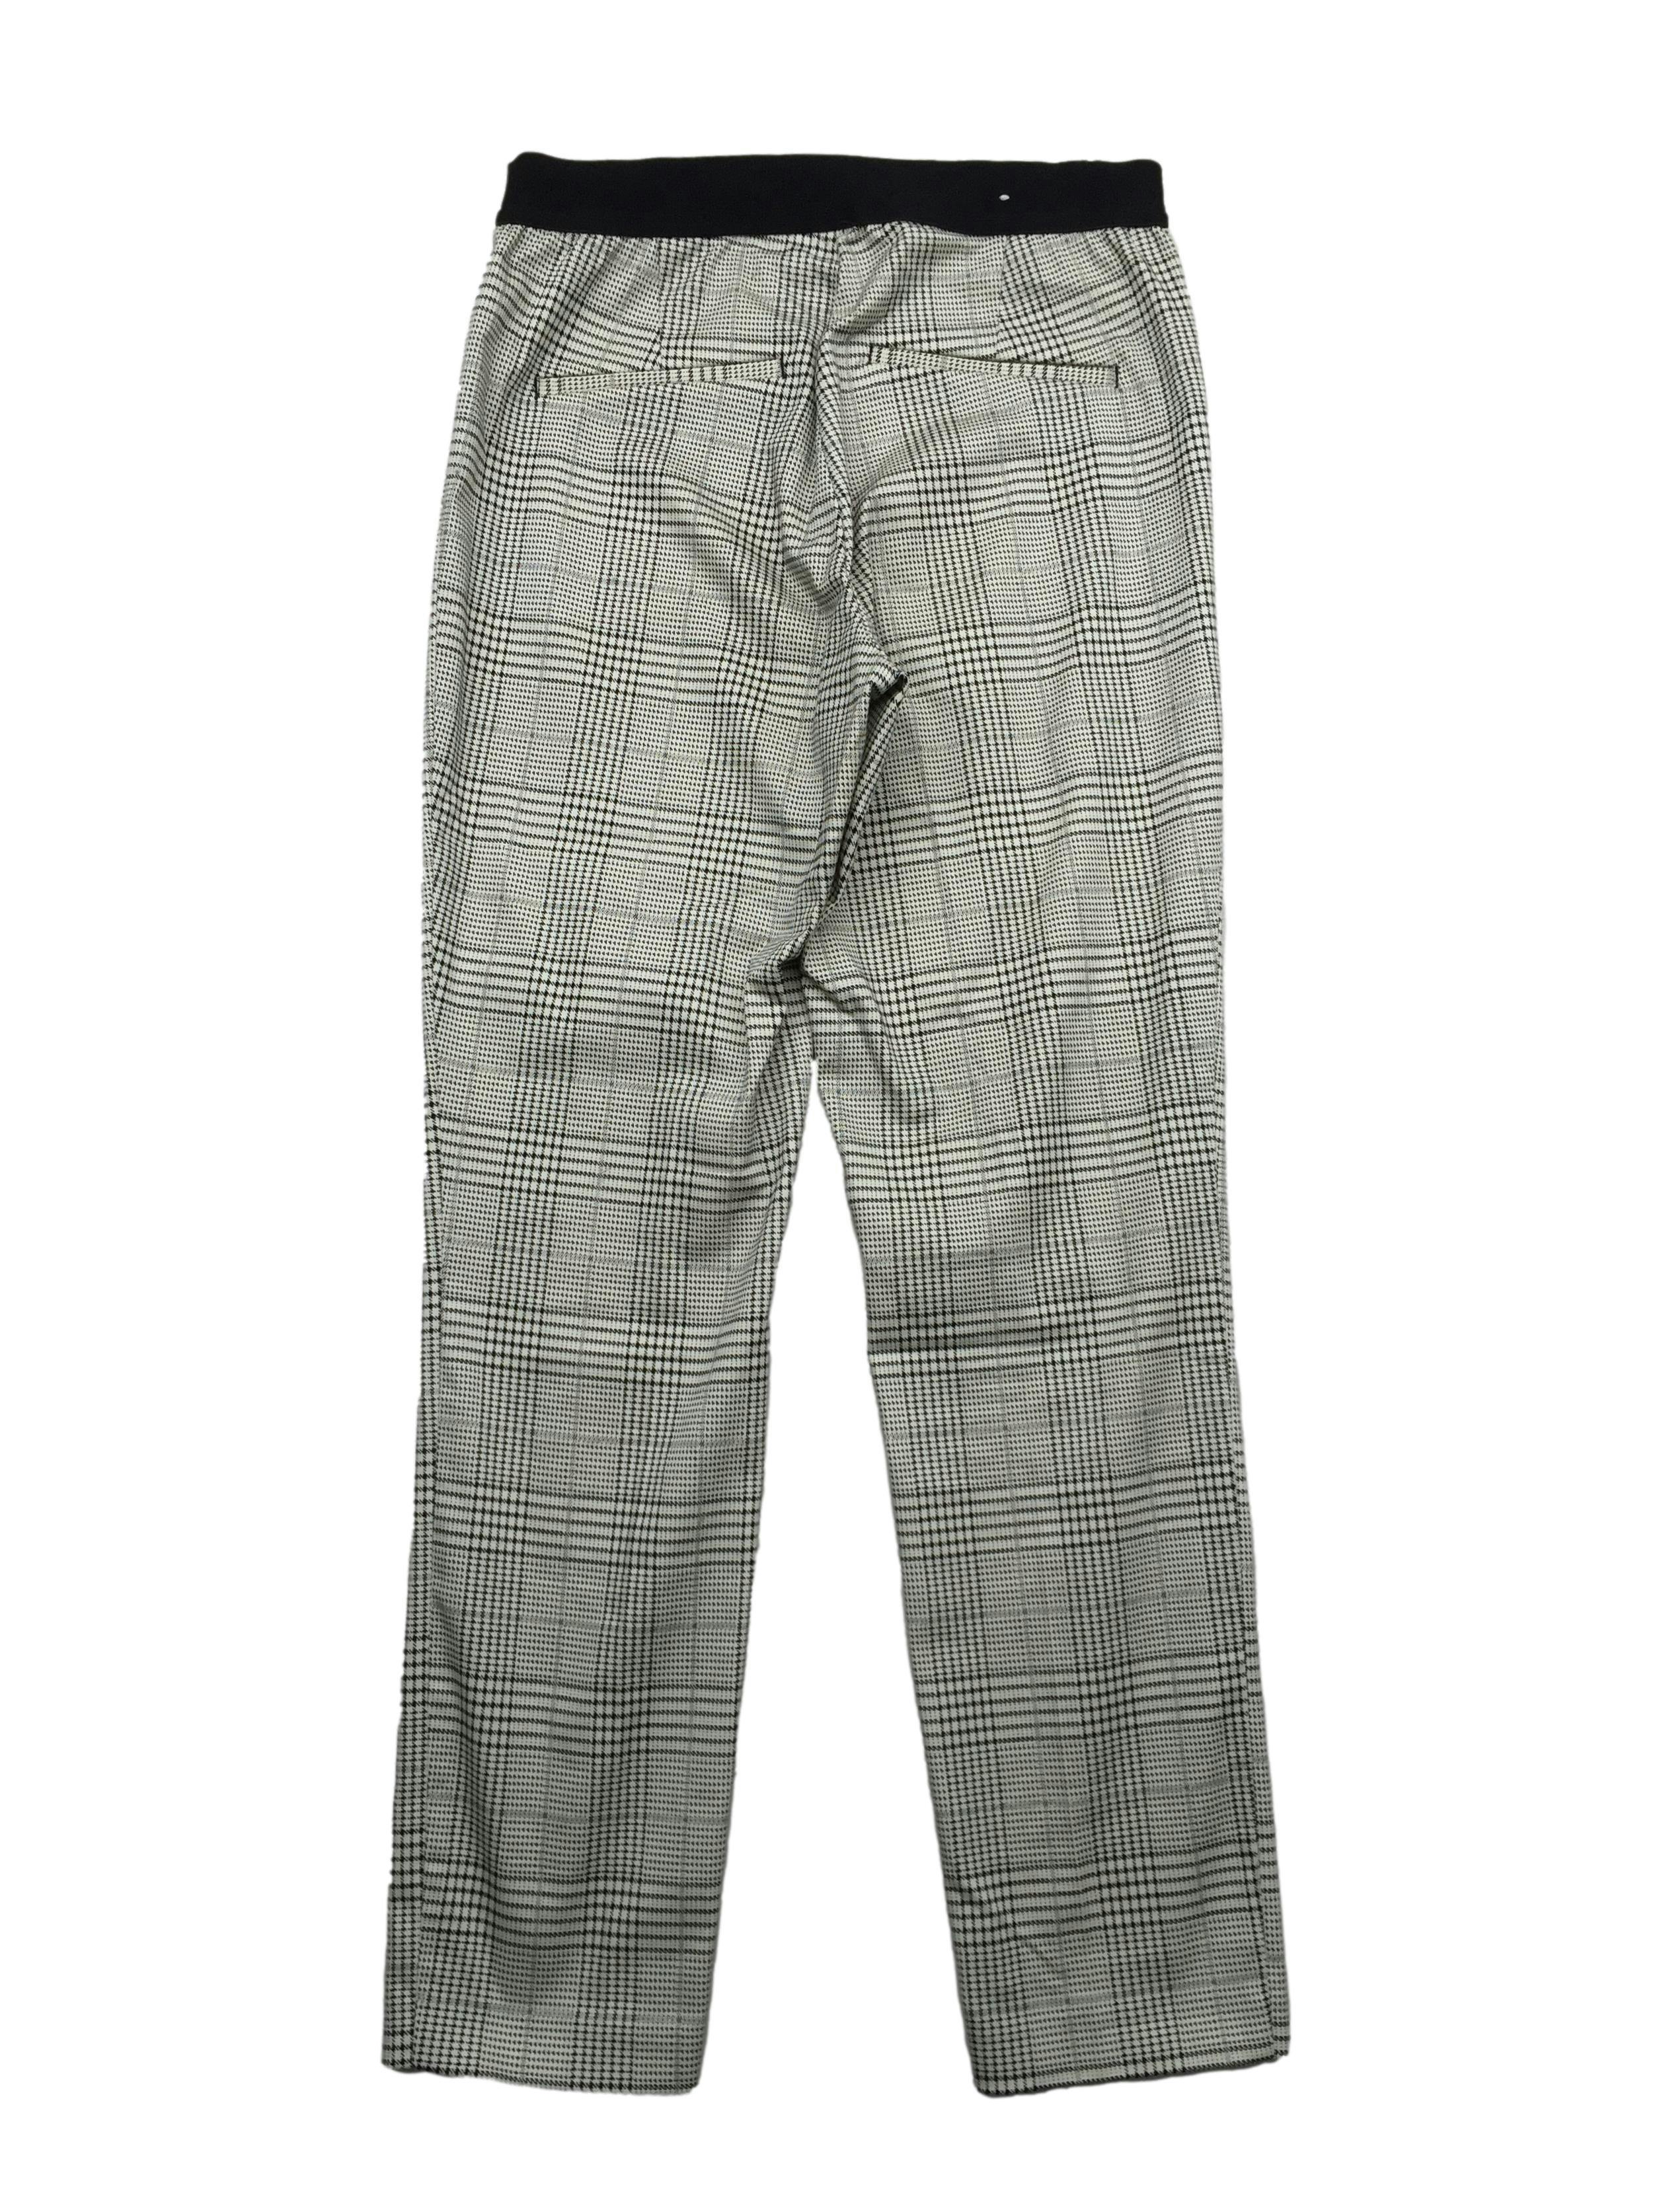 Pantalón slim fit H&M príncipe de gales blanco y negro, parte posterior con pretina elástica y falsos bolsillos. Cintura 70cm, Largo 93cm.